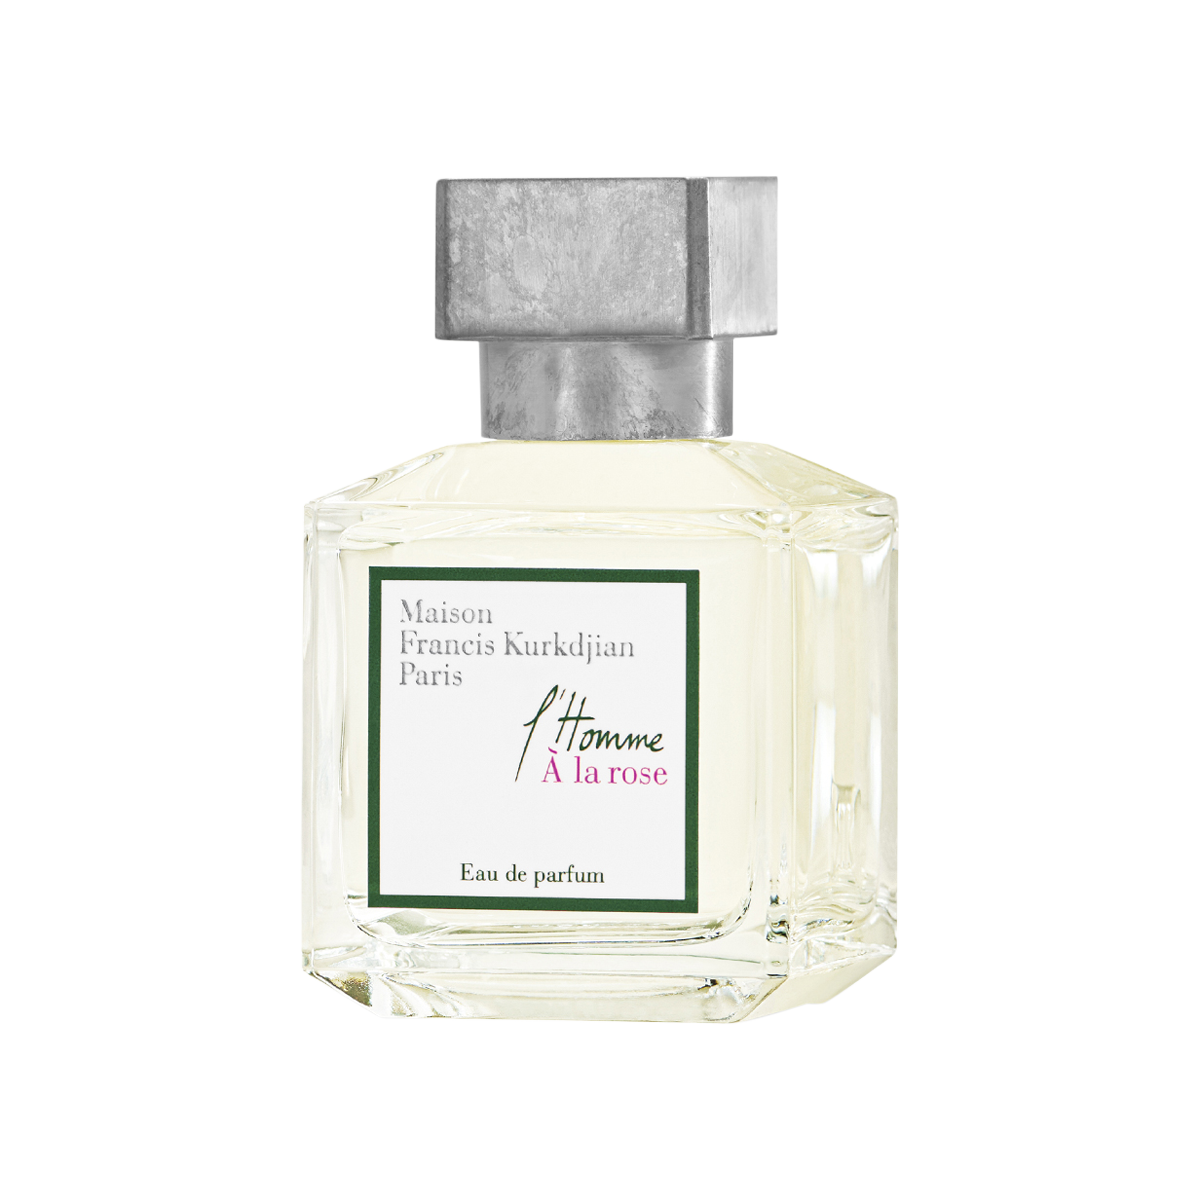 Maison Francis Kurkdjian - L'Homme a la rose Eau de Parfum